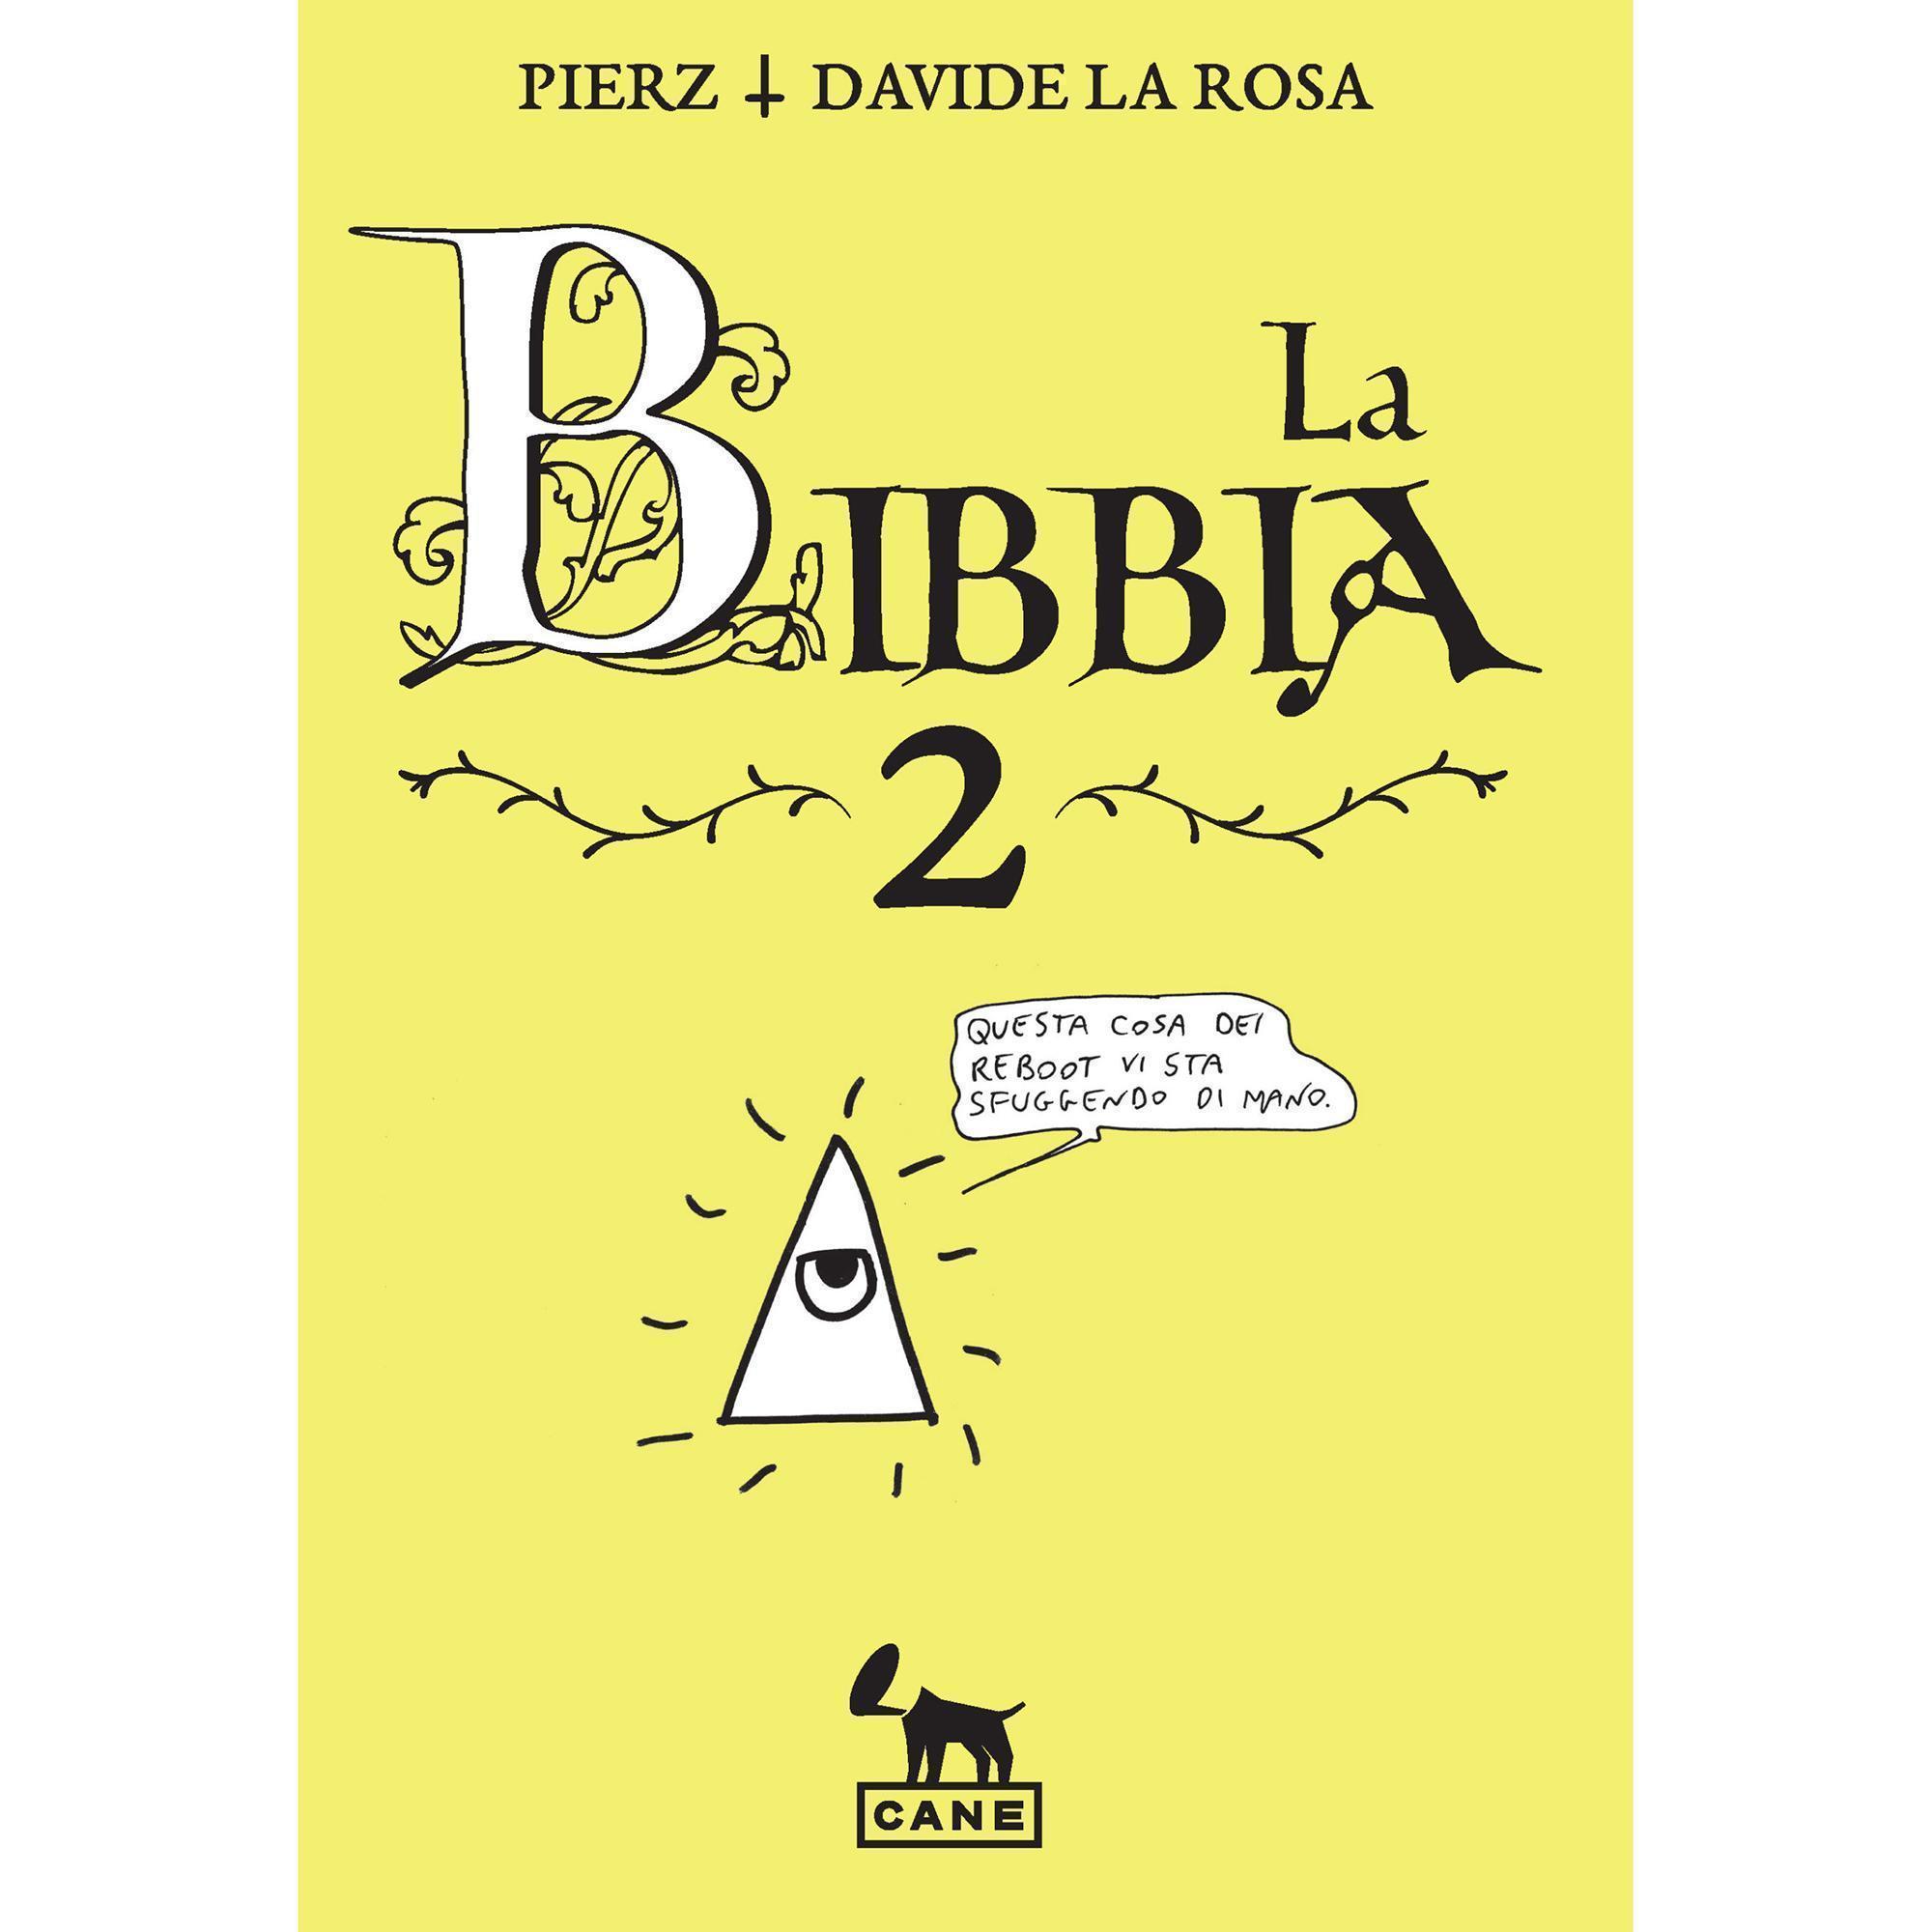 La Bibbia 2 - Shockdom - Pierz, Davide La Rosa